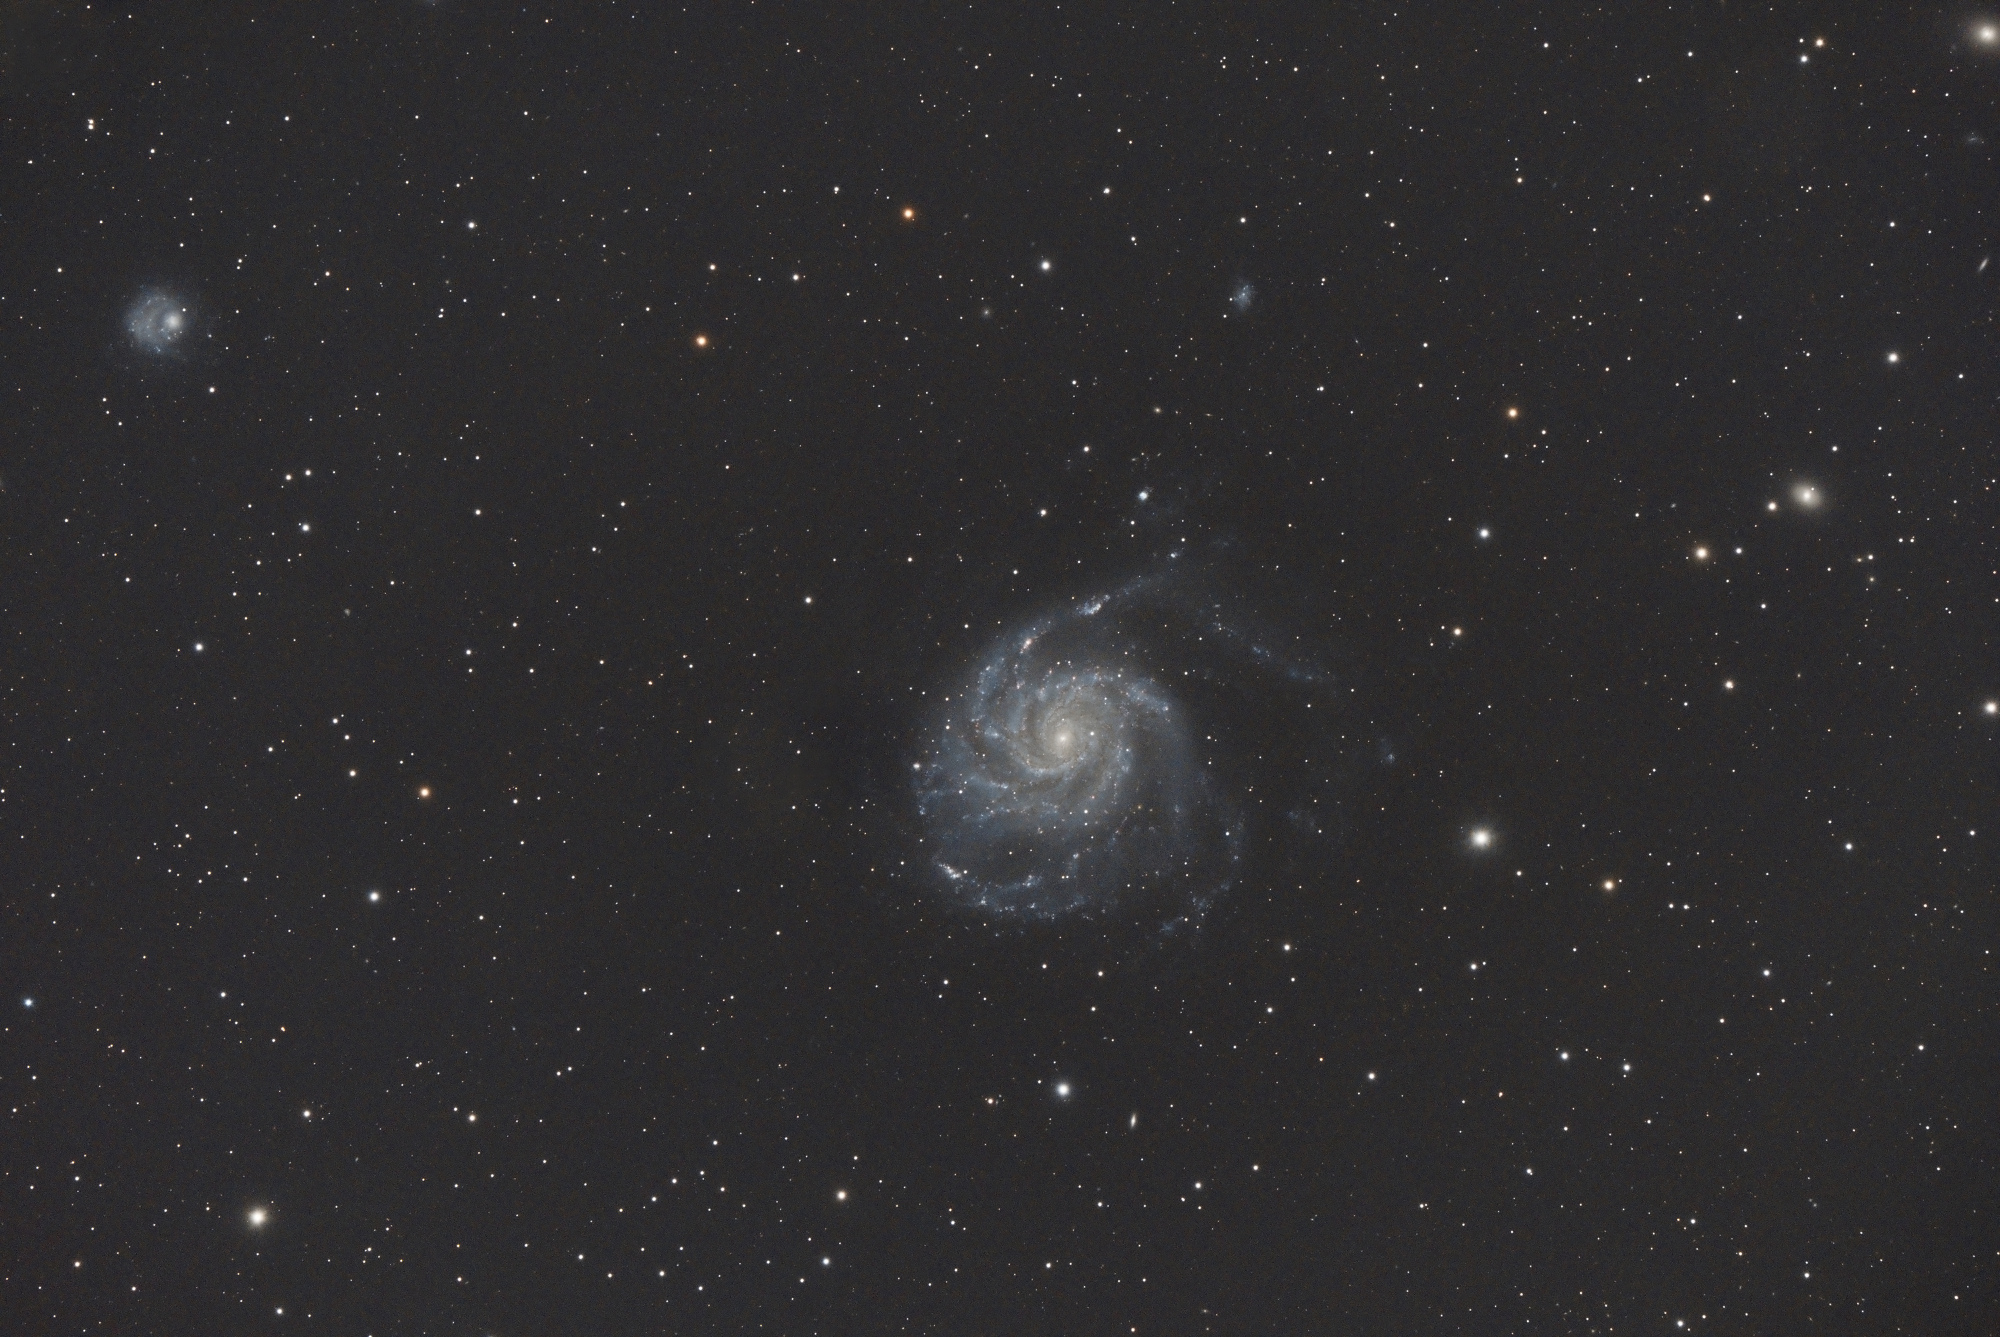 M101_SIRIL-1-cs5-2-FINAL-2.jpg